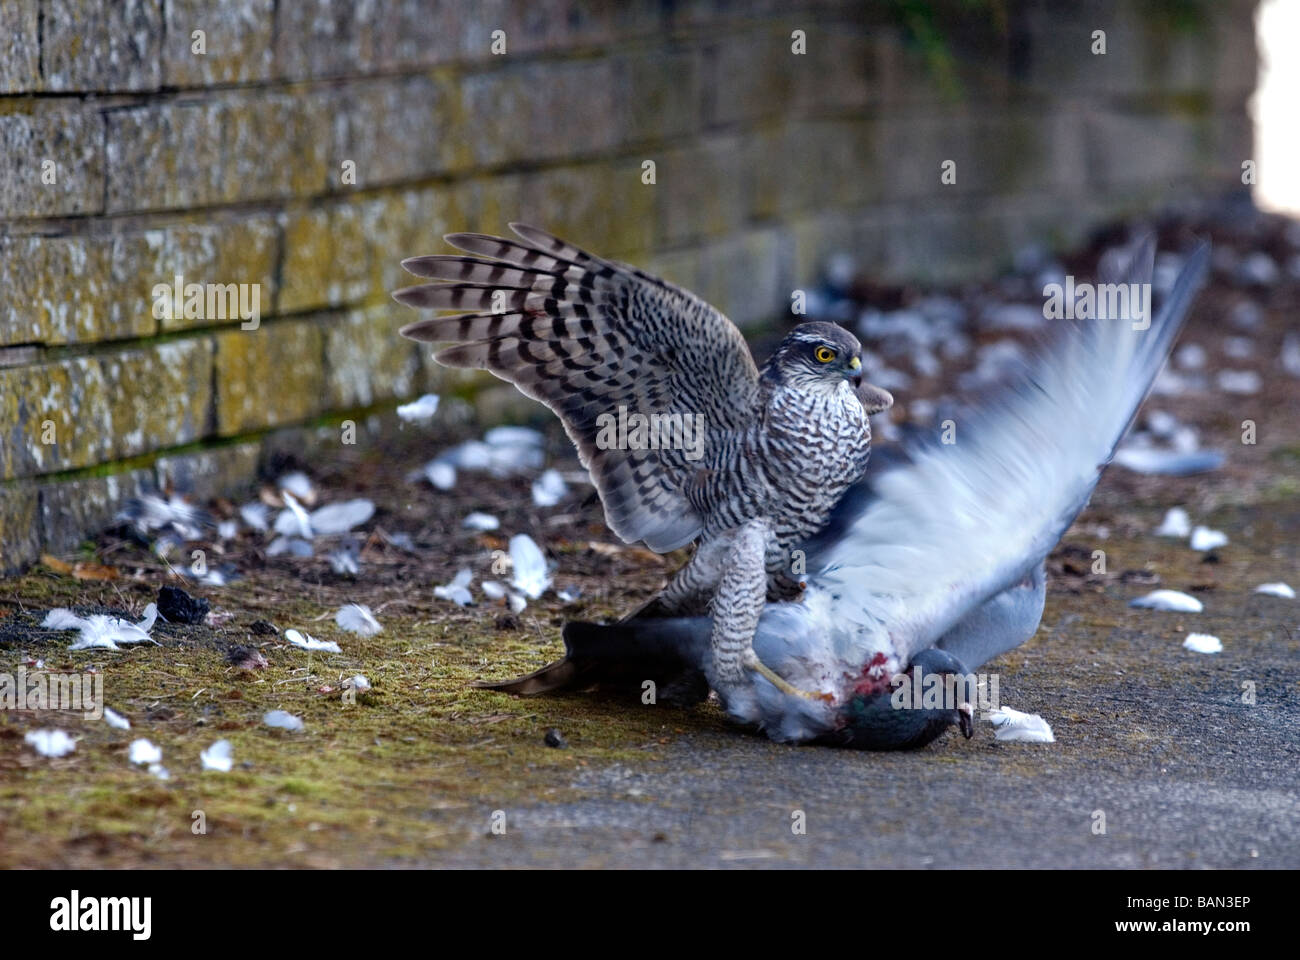 Una hembra de Gavilán en una calle suburbana en Inglaterra comiendo un feral/racing pigeon ha capturado Foto de stock